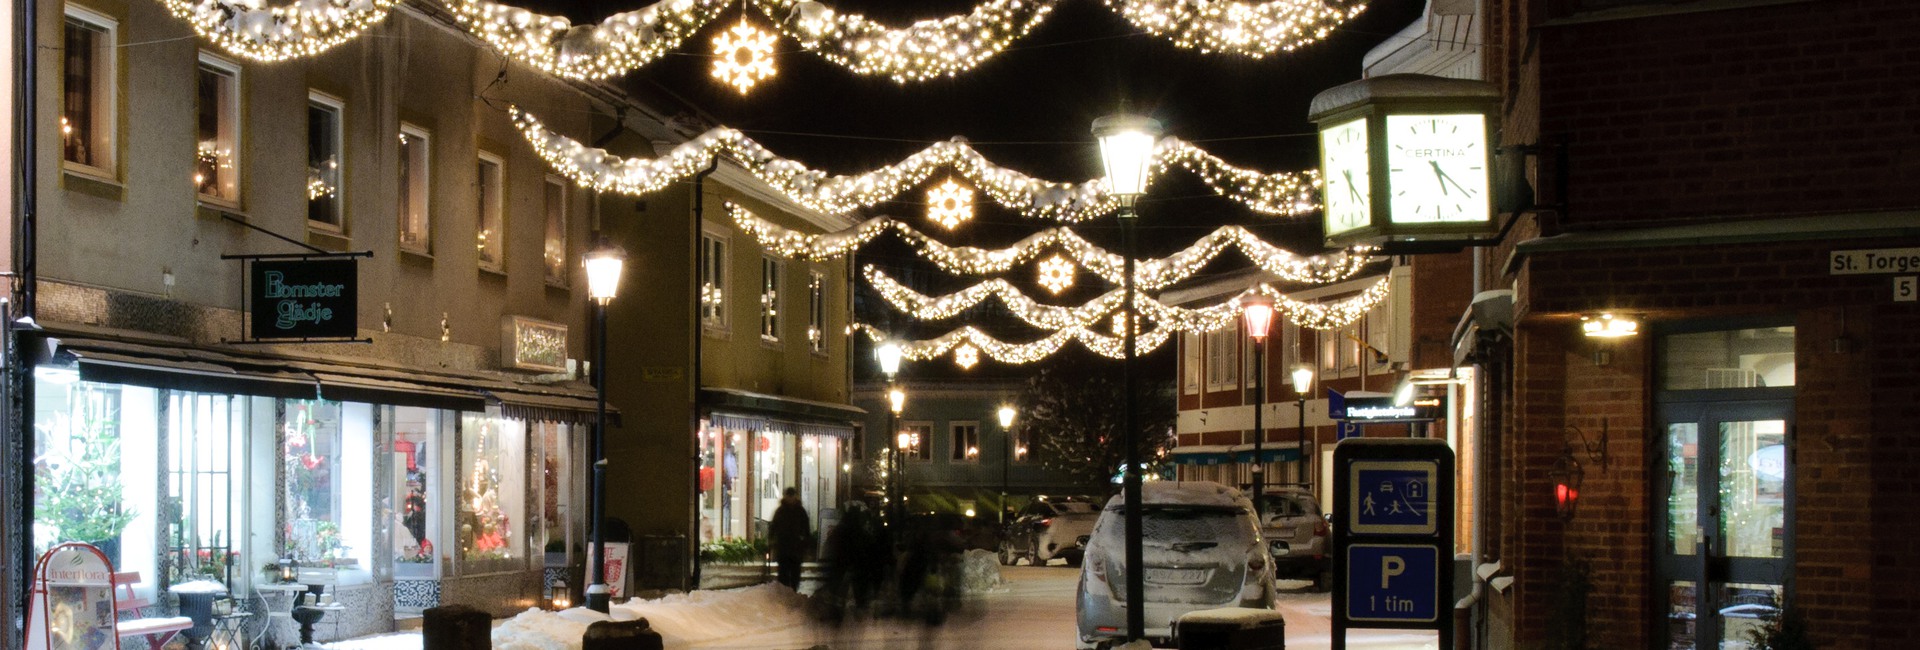 Ljusgirlanger över gågata, vinter Sävsjö centrum.